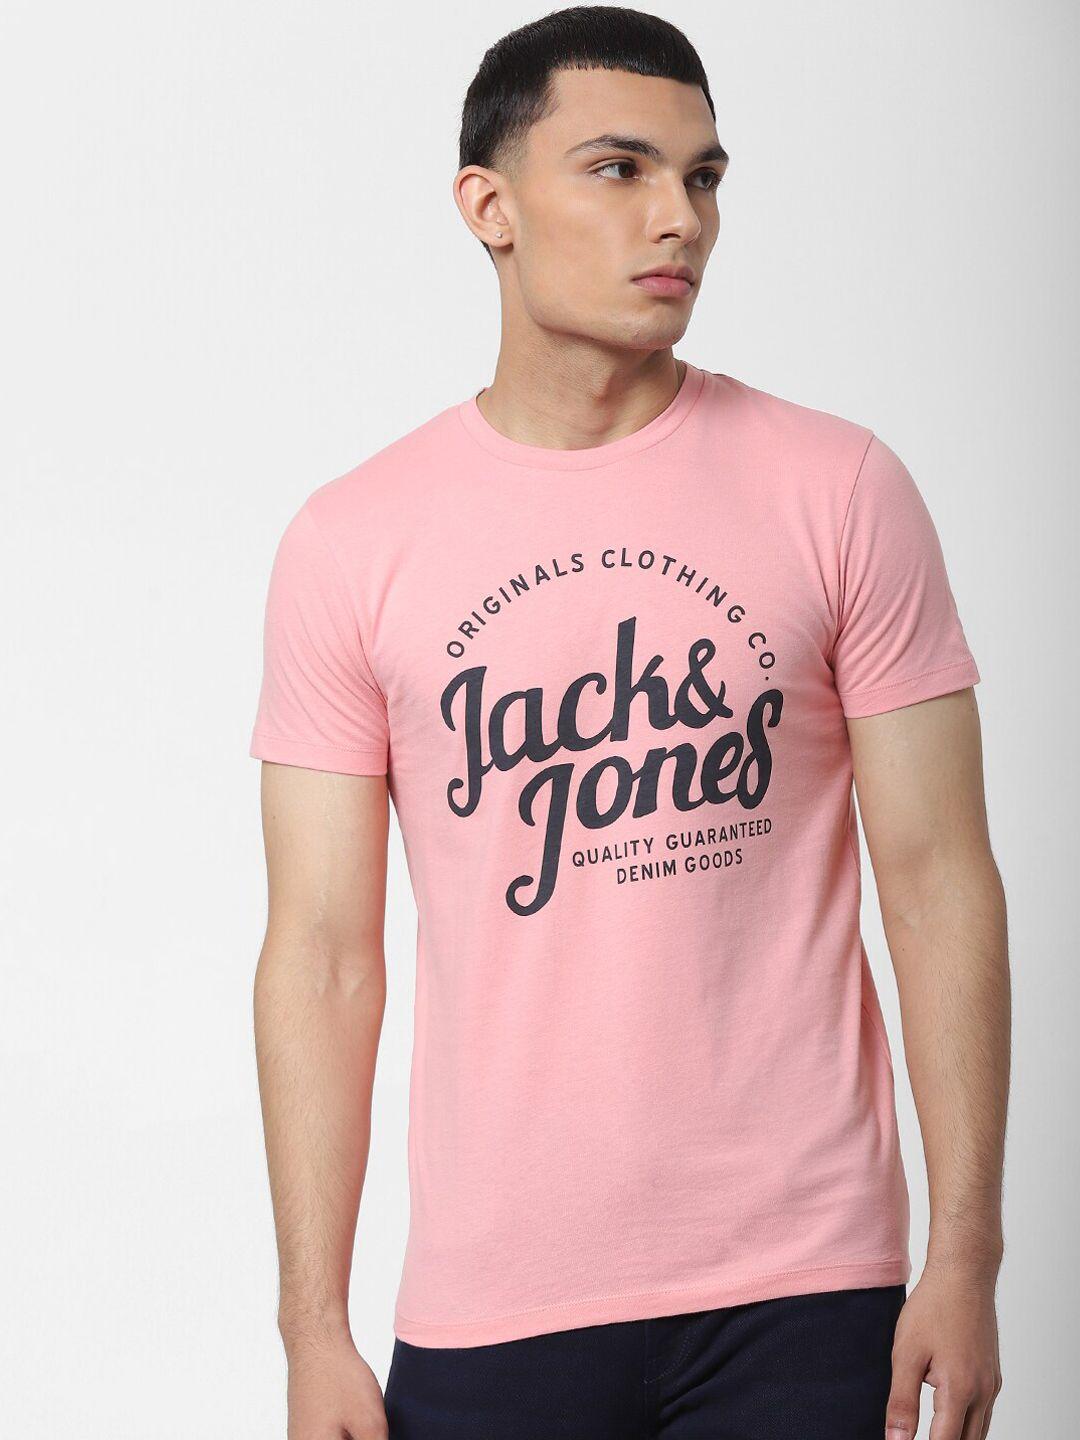 jack-&-jones-men-pink-brand-logo-printed-round-neck-t-shirt